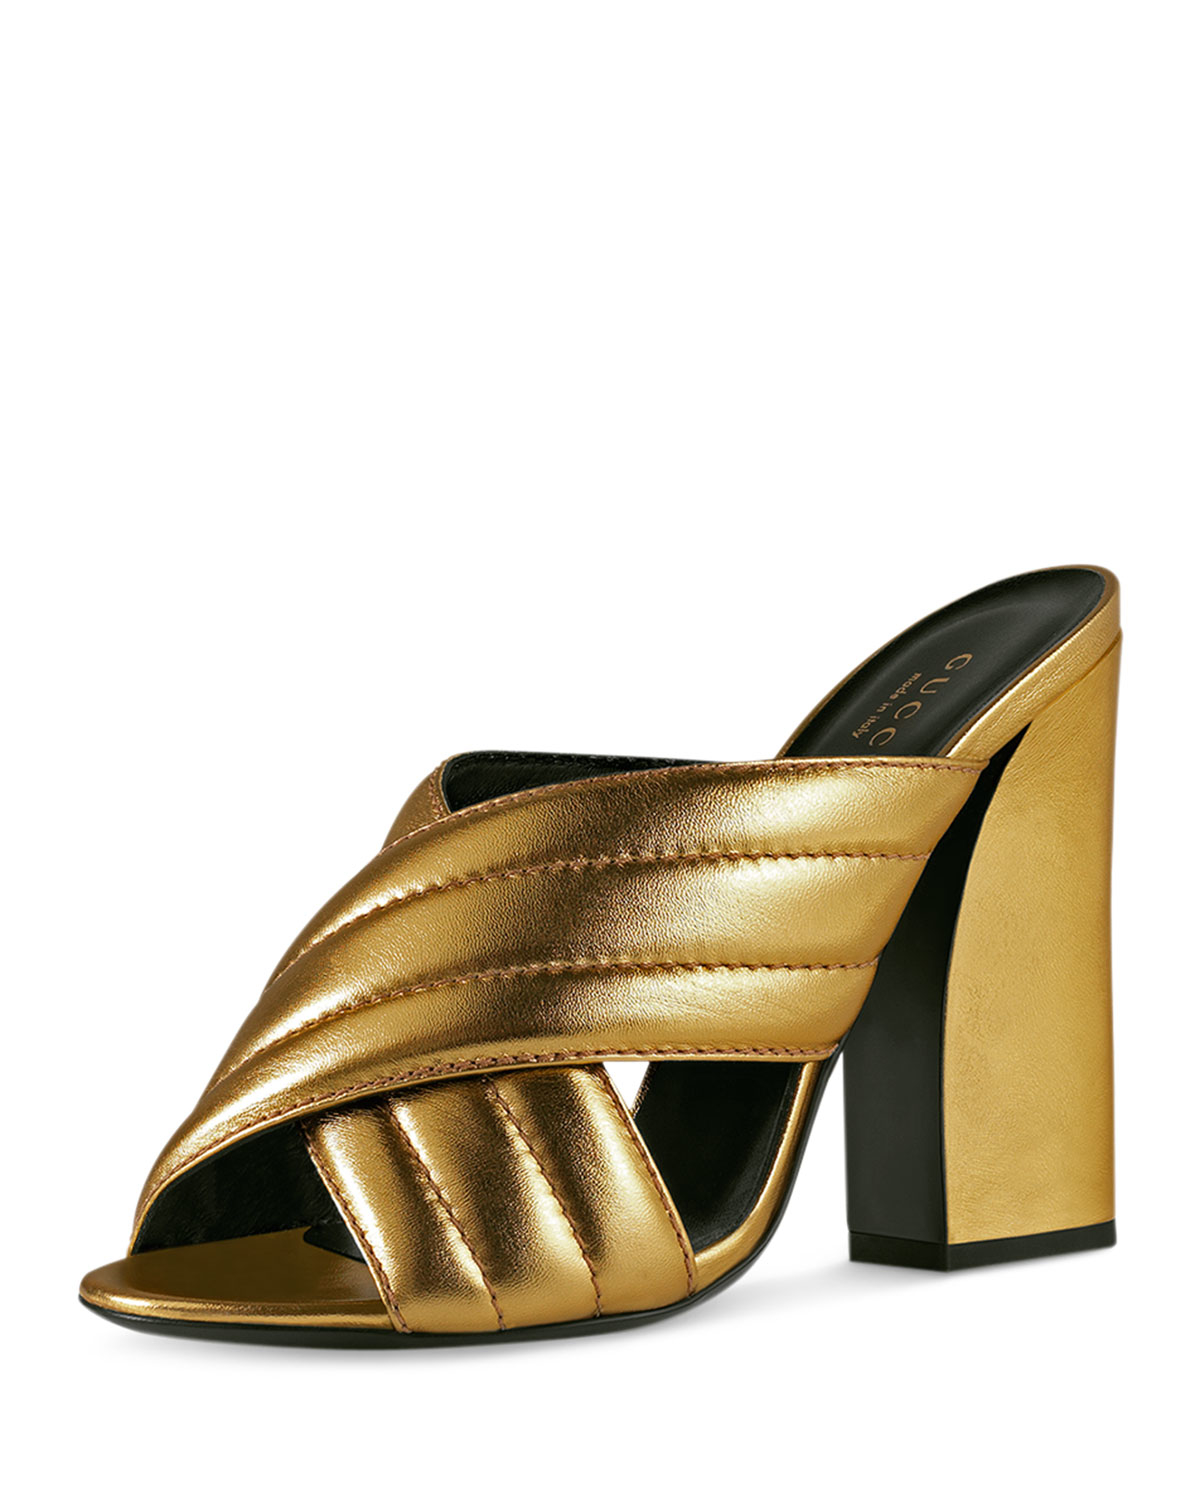 gucci gold sandals heels